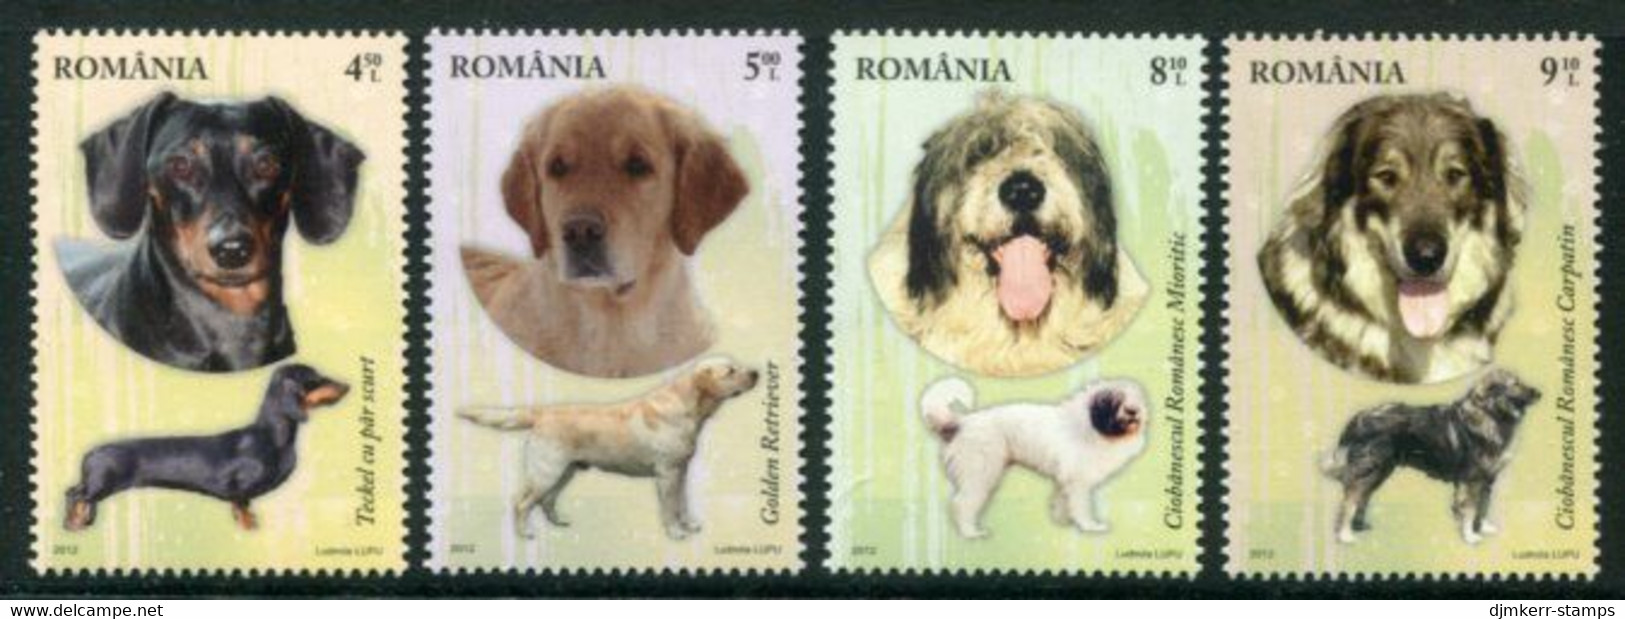 ROMANIA 2012 Dog Breeds  MNH / **.  Michel 6640-43 - Ungebraucht